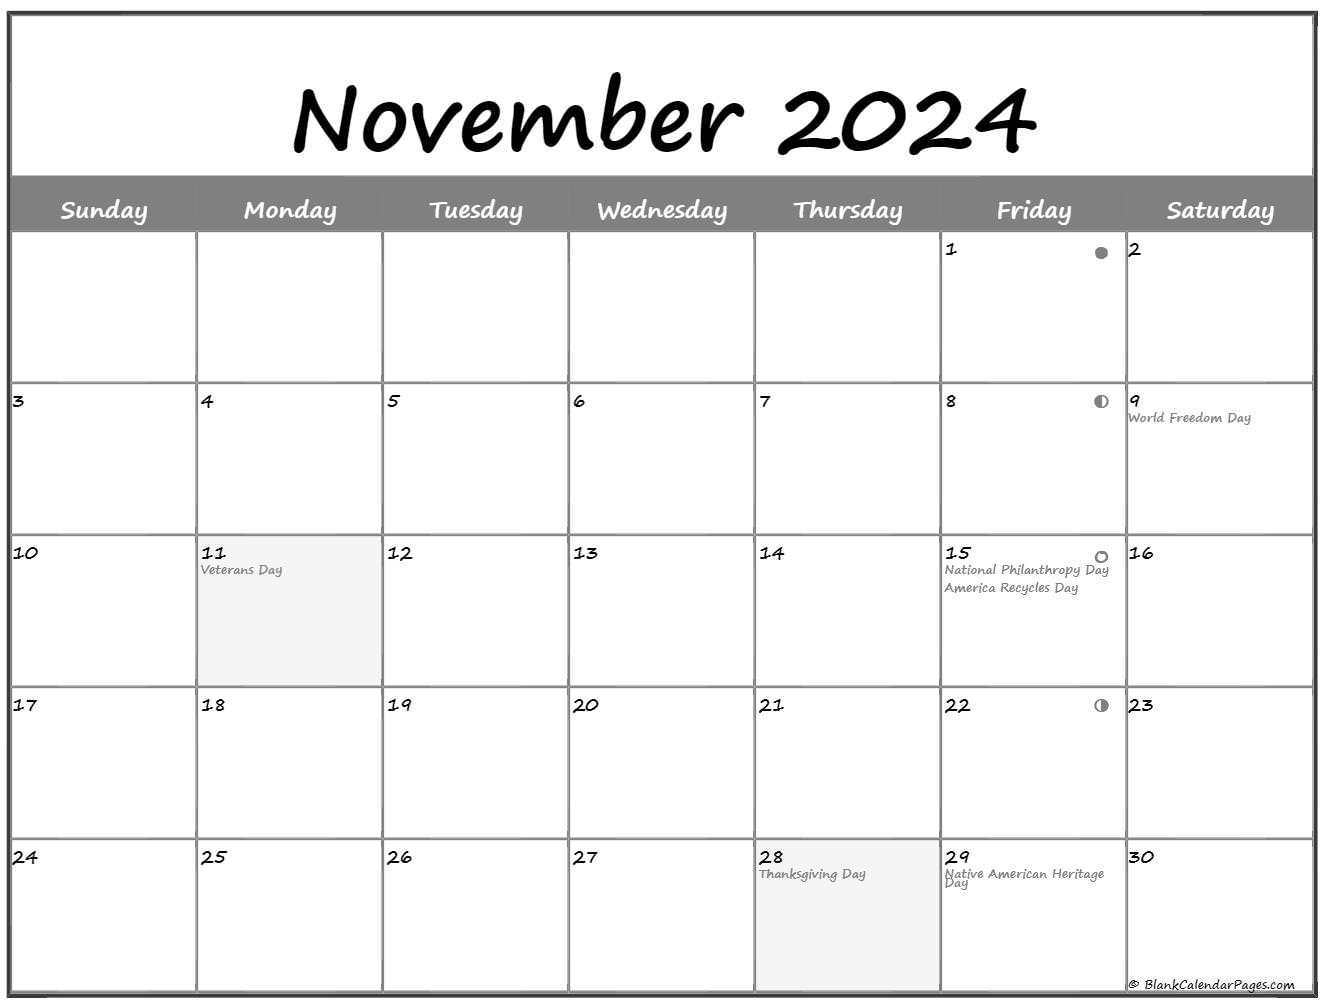 november-2022-lunar-calendar-moon-phase-calendar